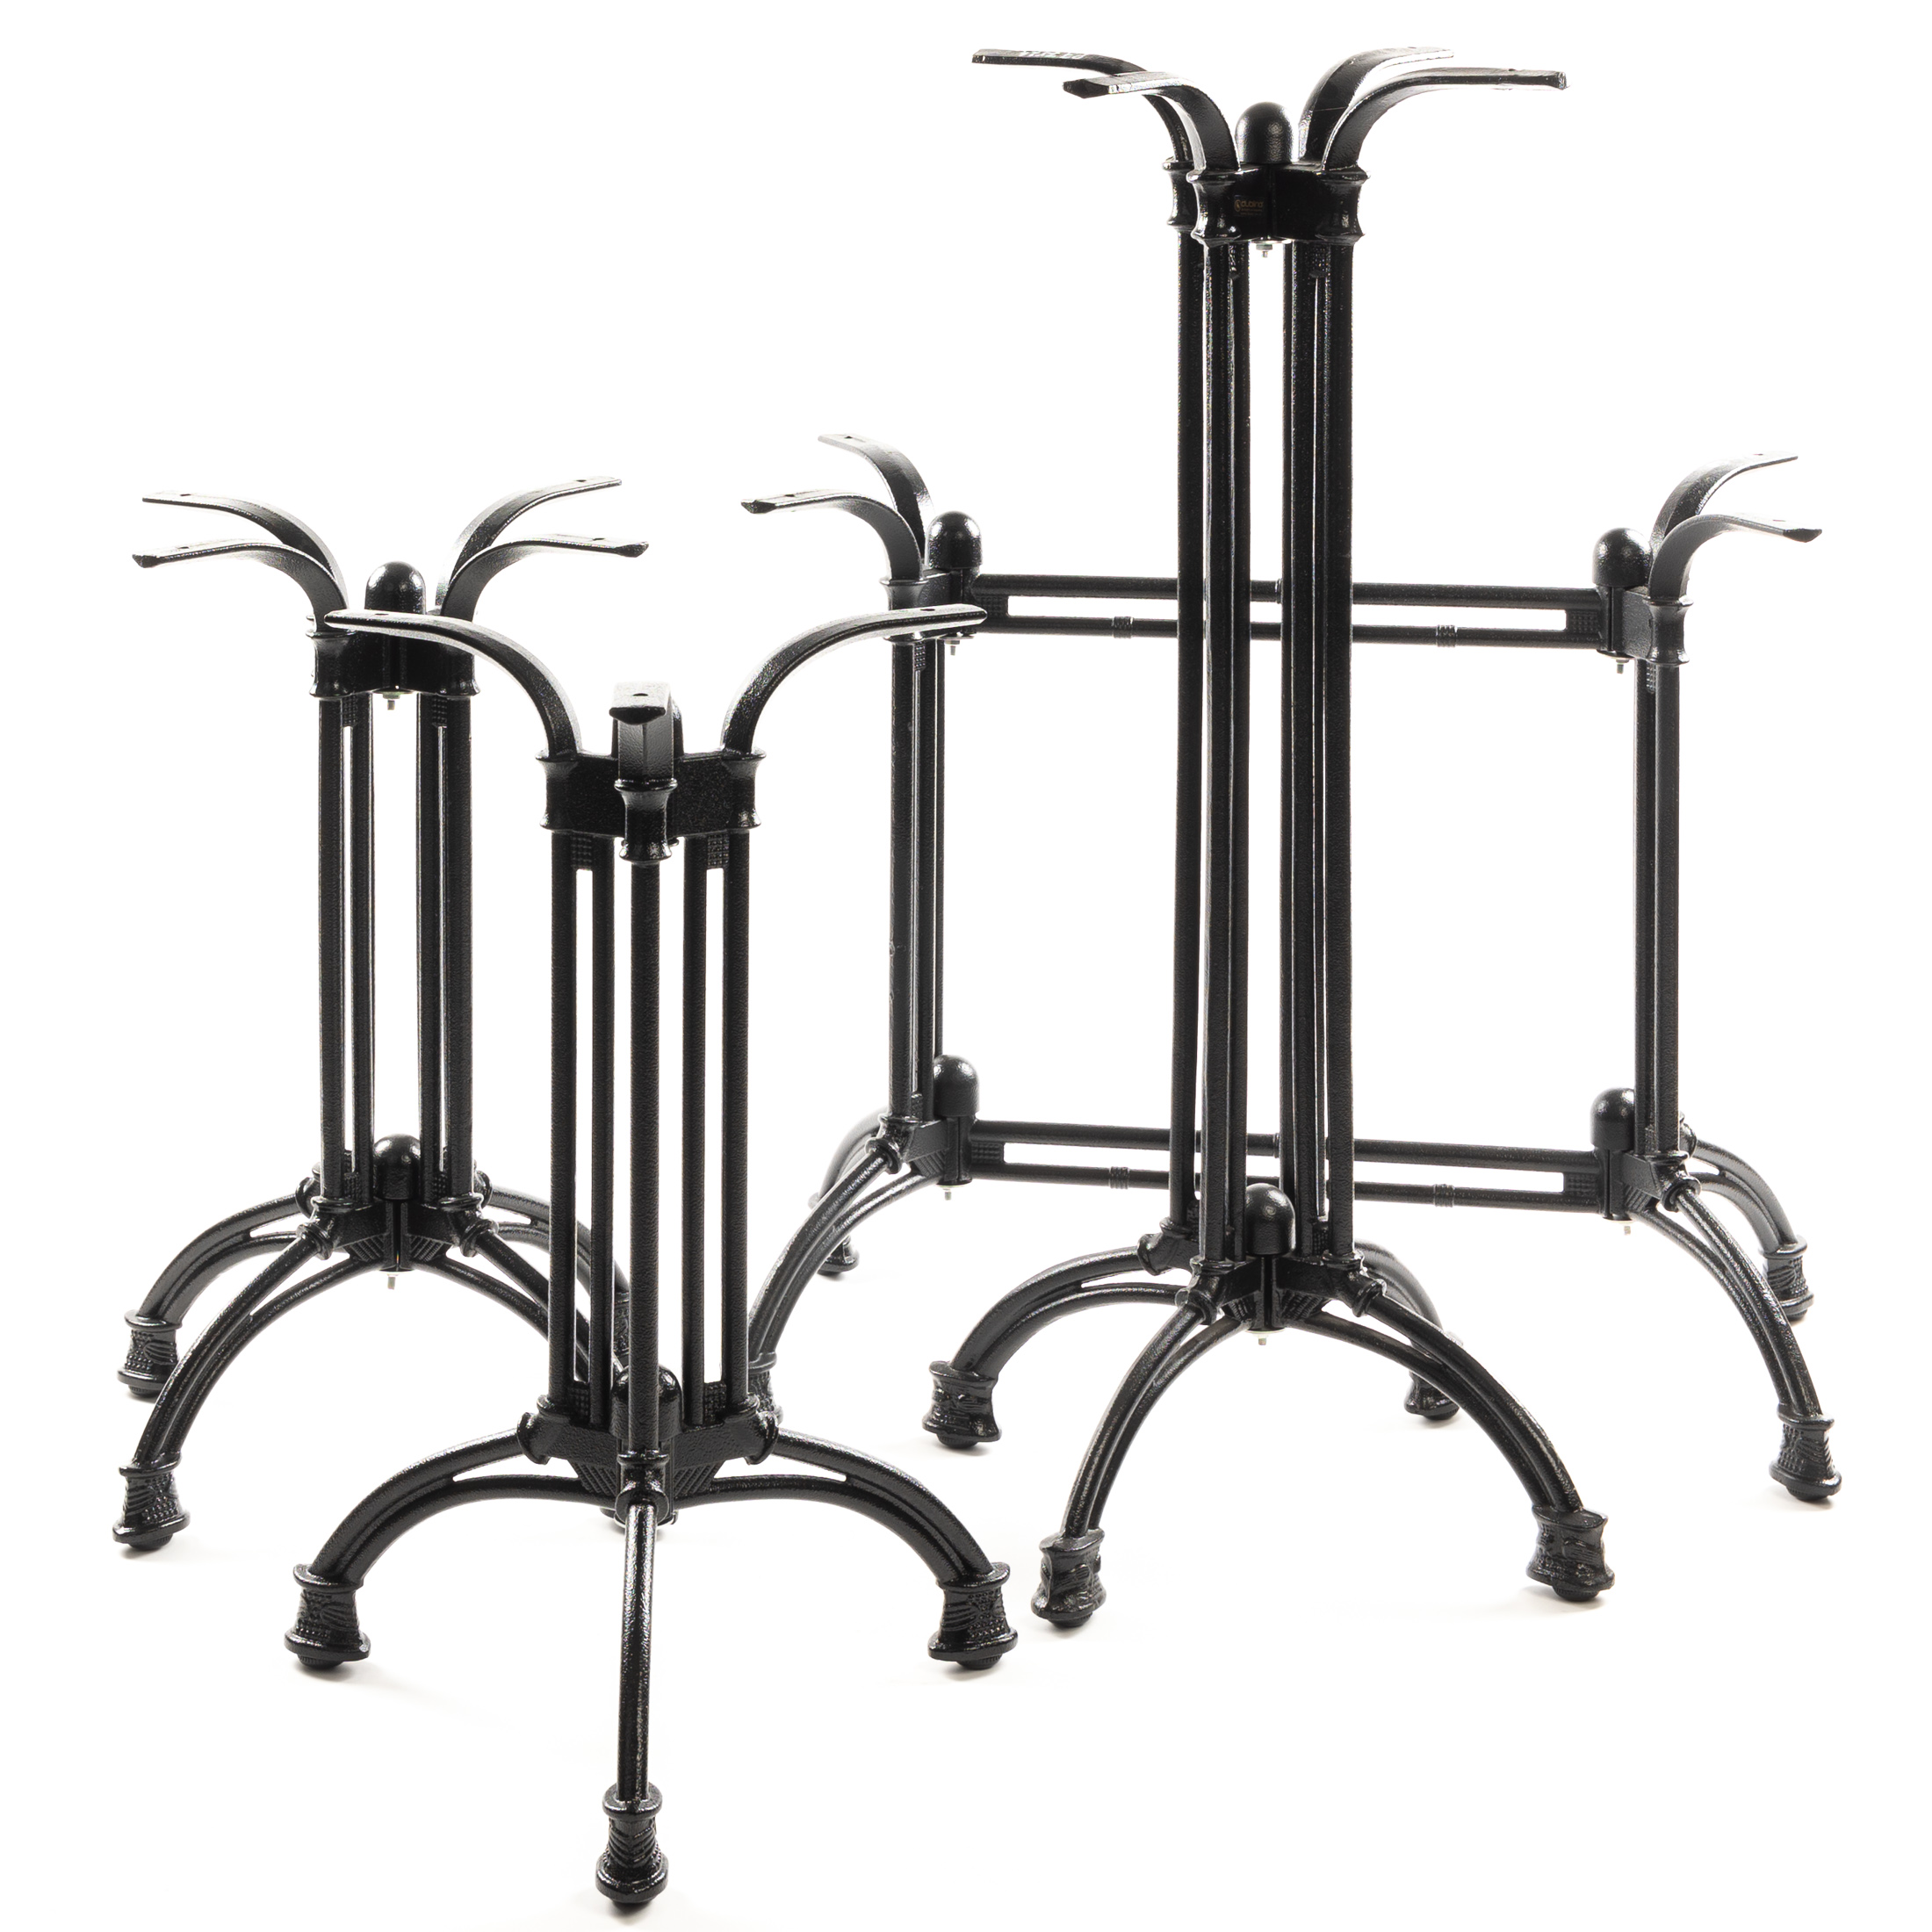 Tischgestell PJ7021, Gusseisen, Doppelsäule, schwarz, elegant